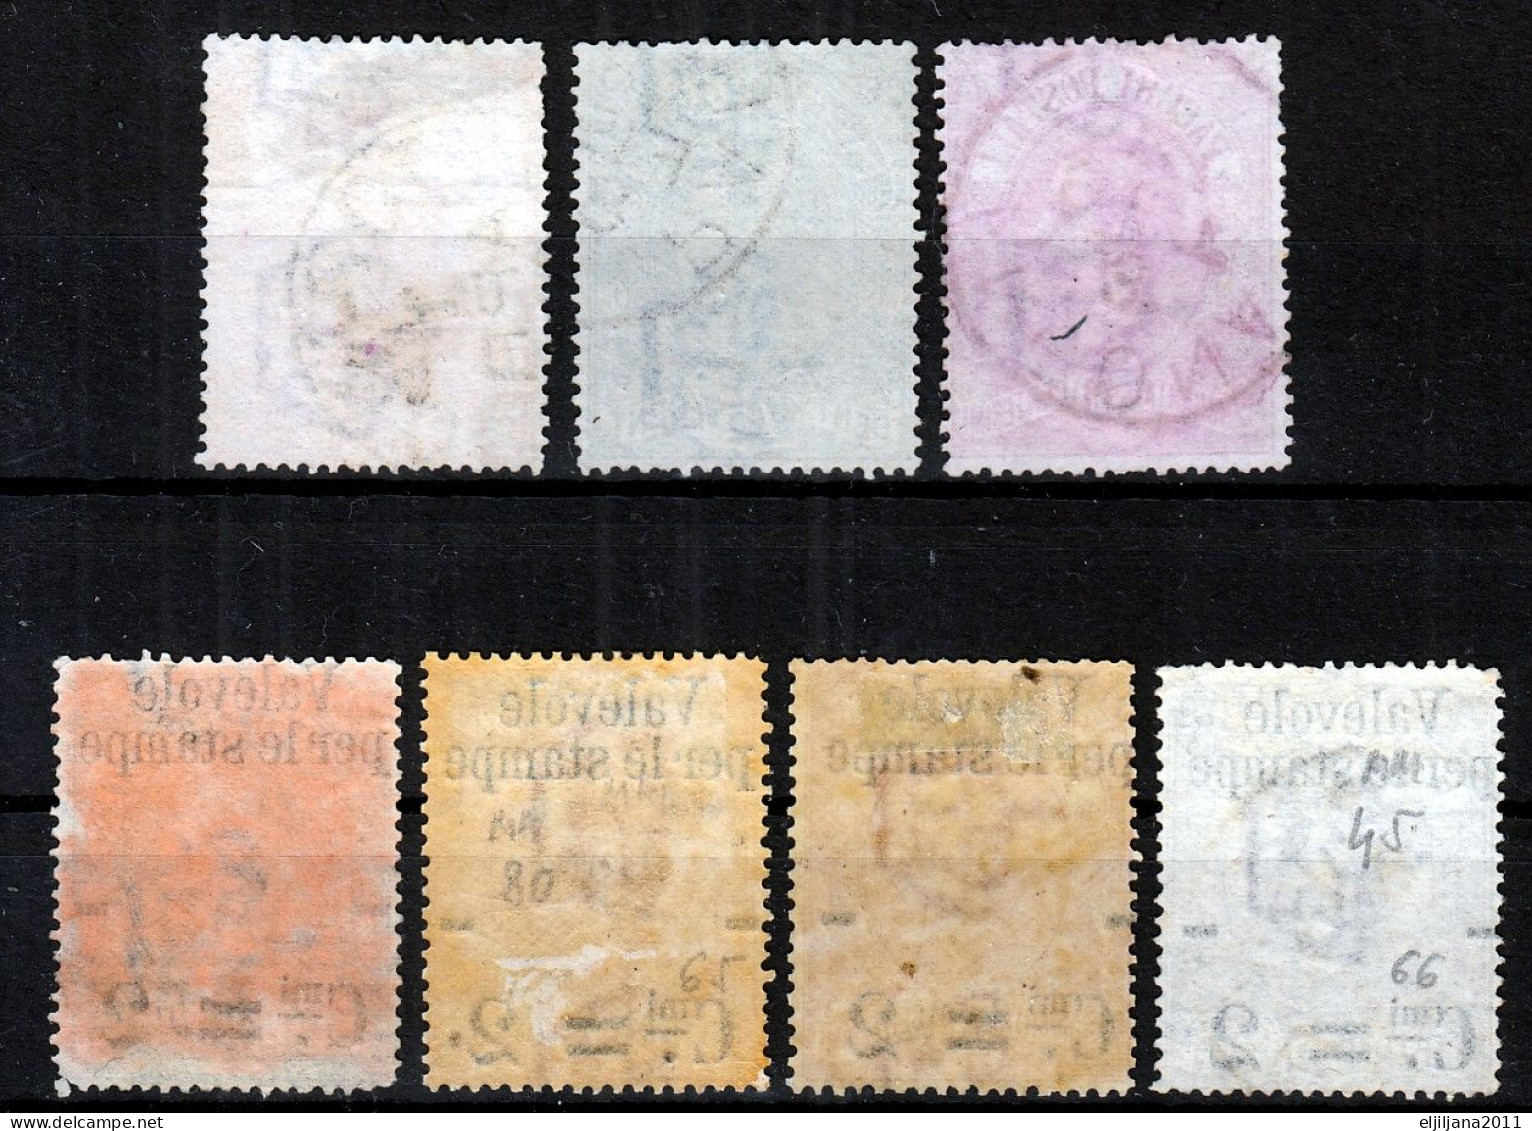 Action !! SALE !! 50 % OFF !! ⁕ Italy 1884 - 1890 ⁕ Newspaper Stamp Overprint On Parcel Post ⁕ 7v Used (2v MLH) - Paketmarken